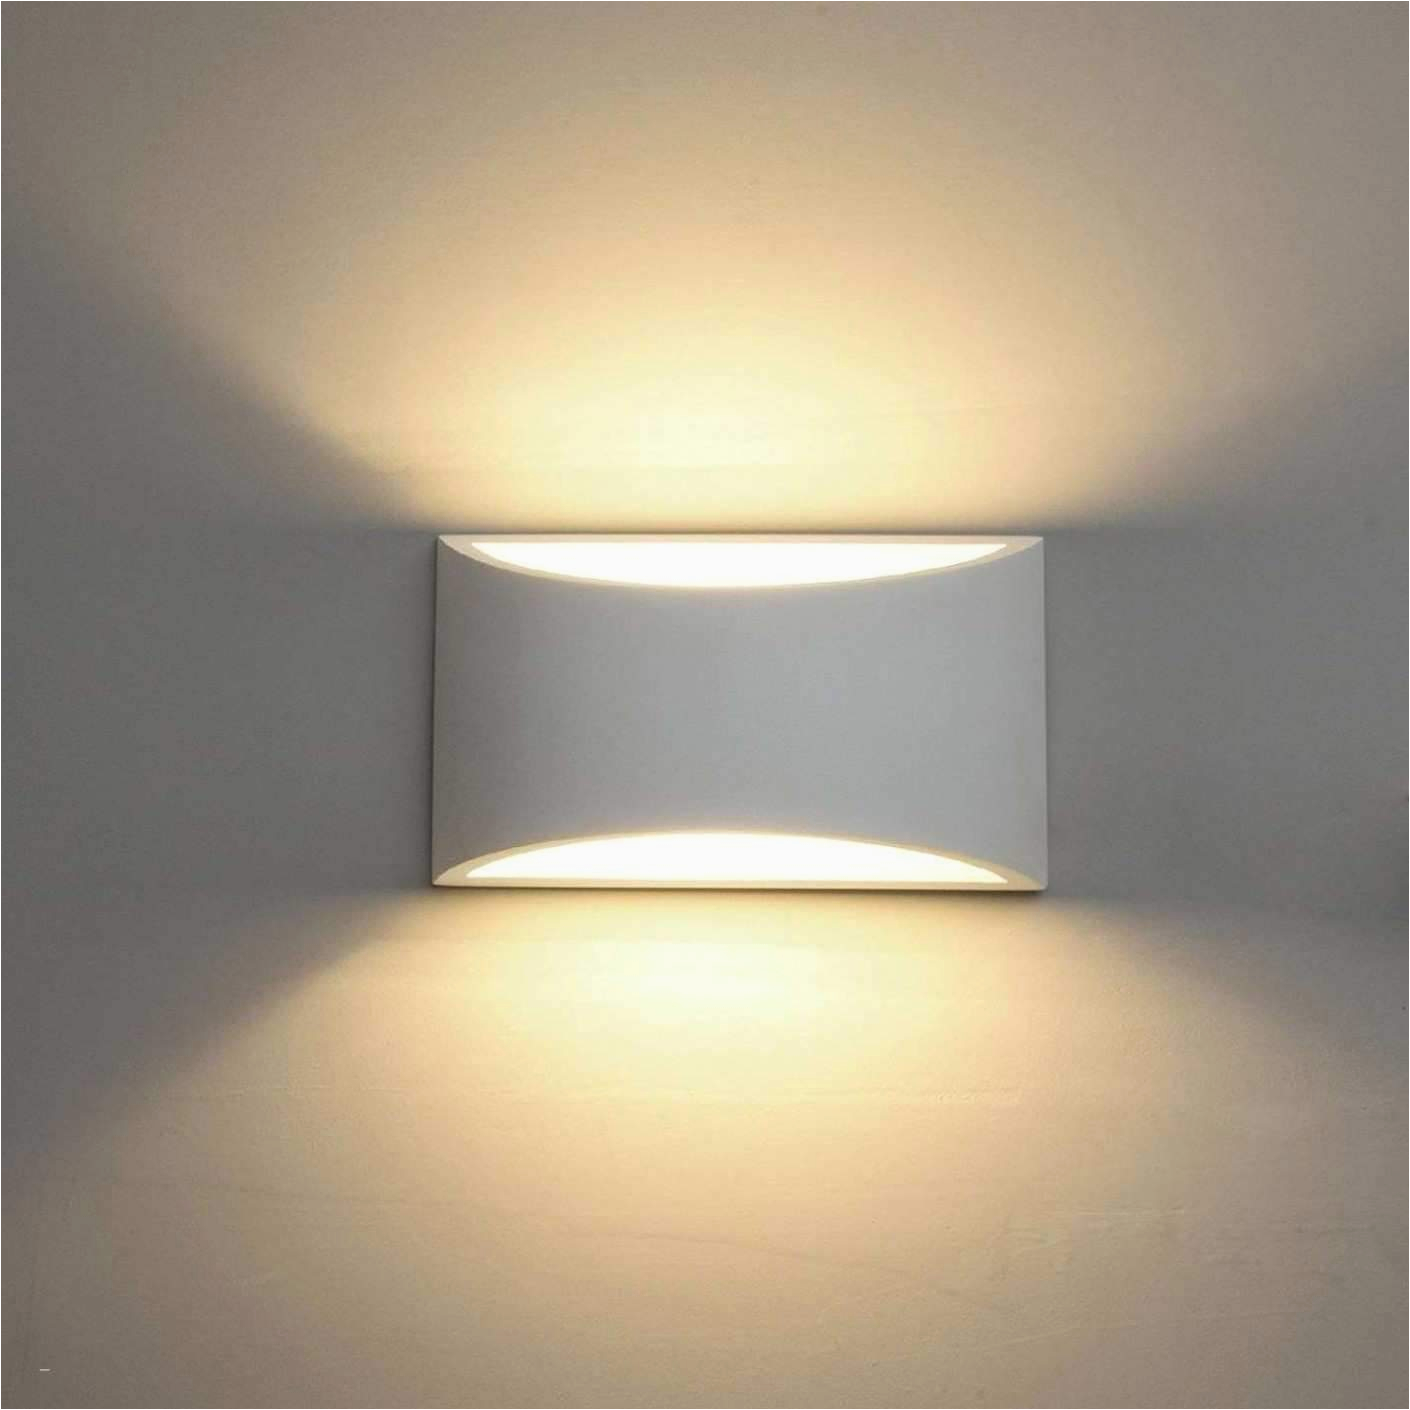 ikea lampen wohnzimmer frisch lampen wohnzimmer das beste von deckenlampe schlafzimmer 0d of ikea lampen wohnzimmer